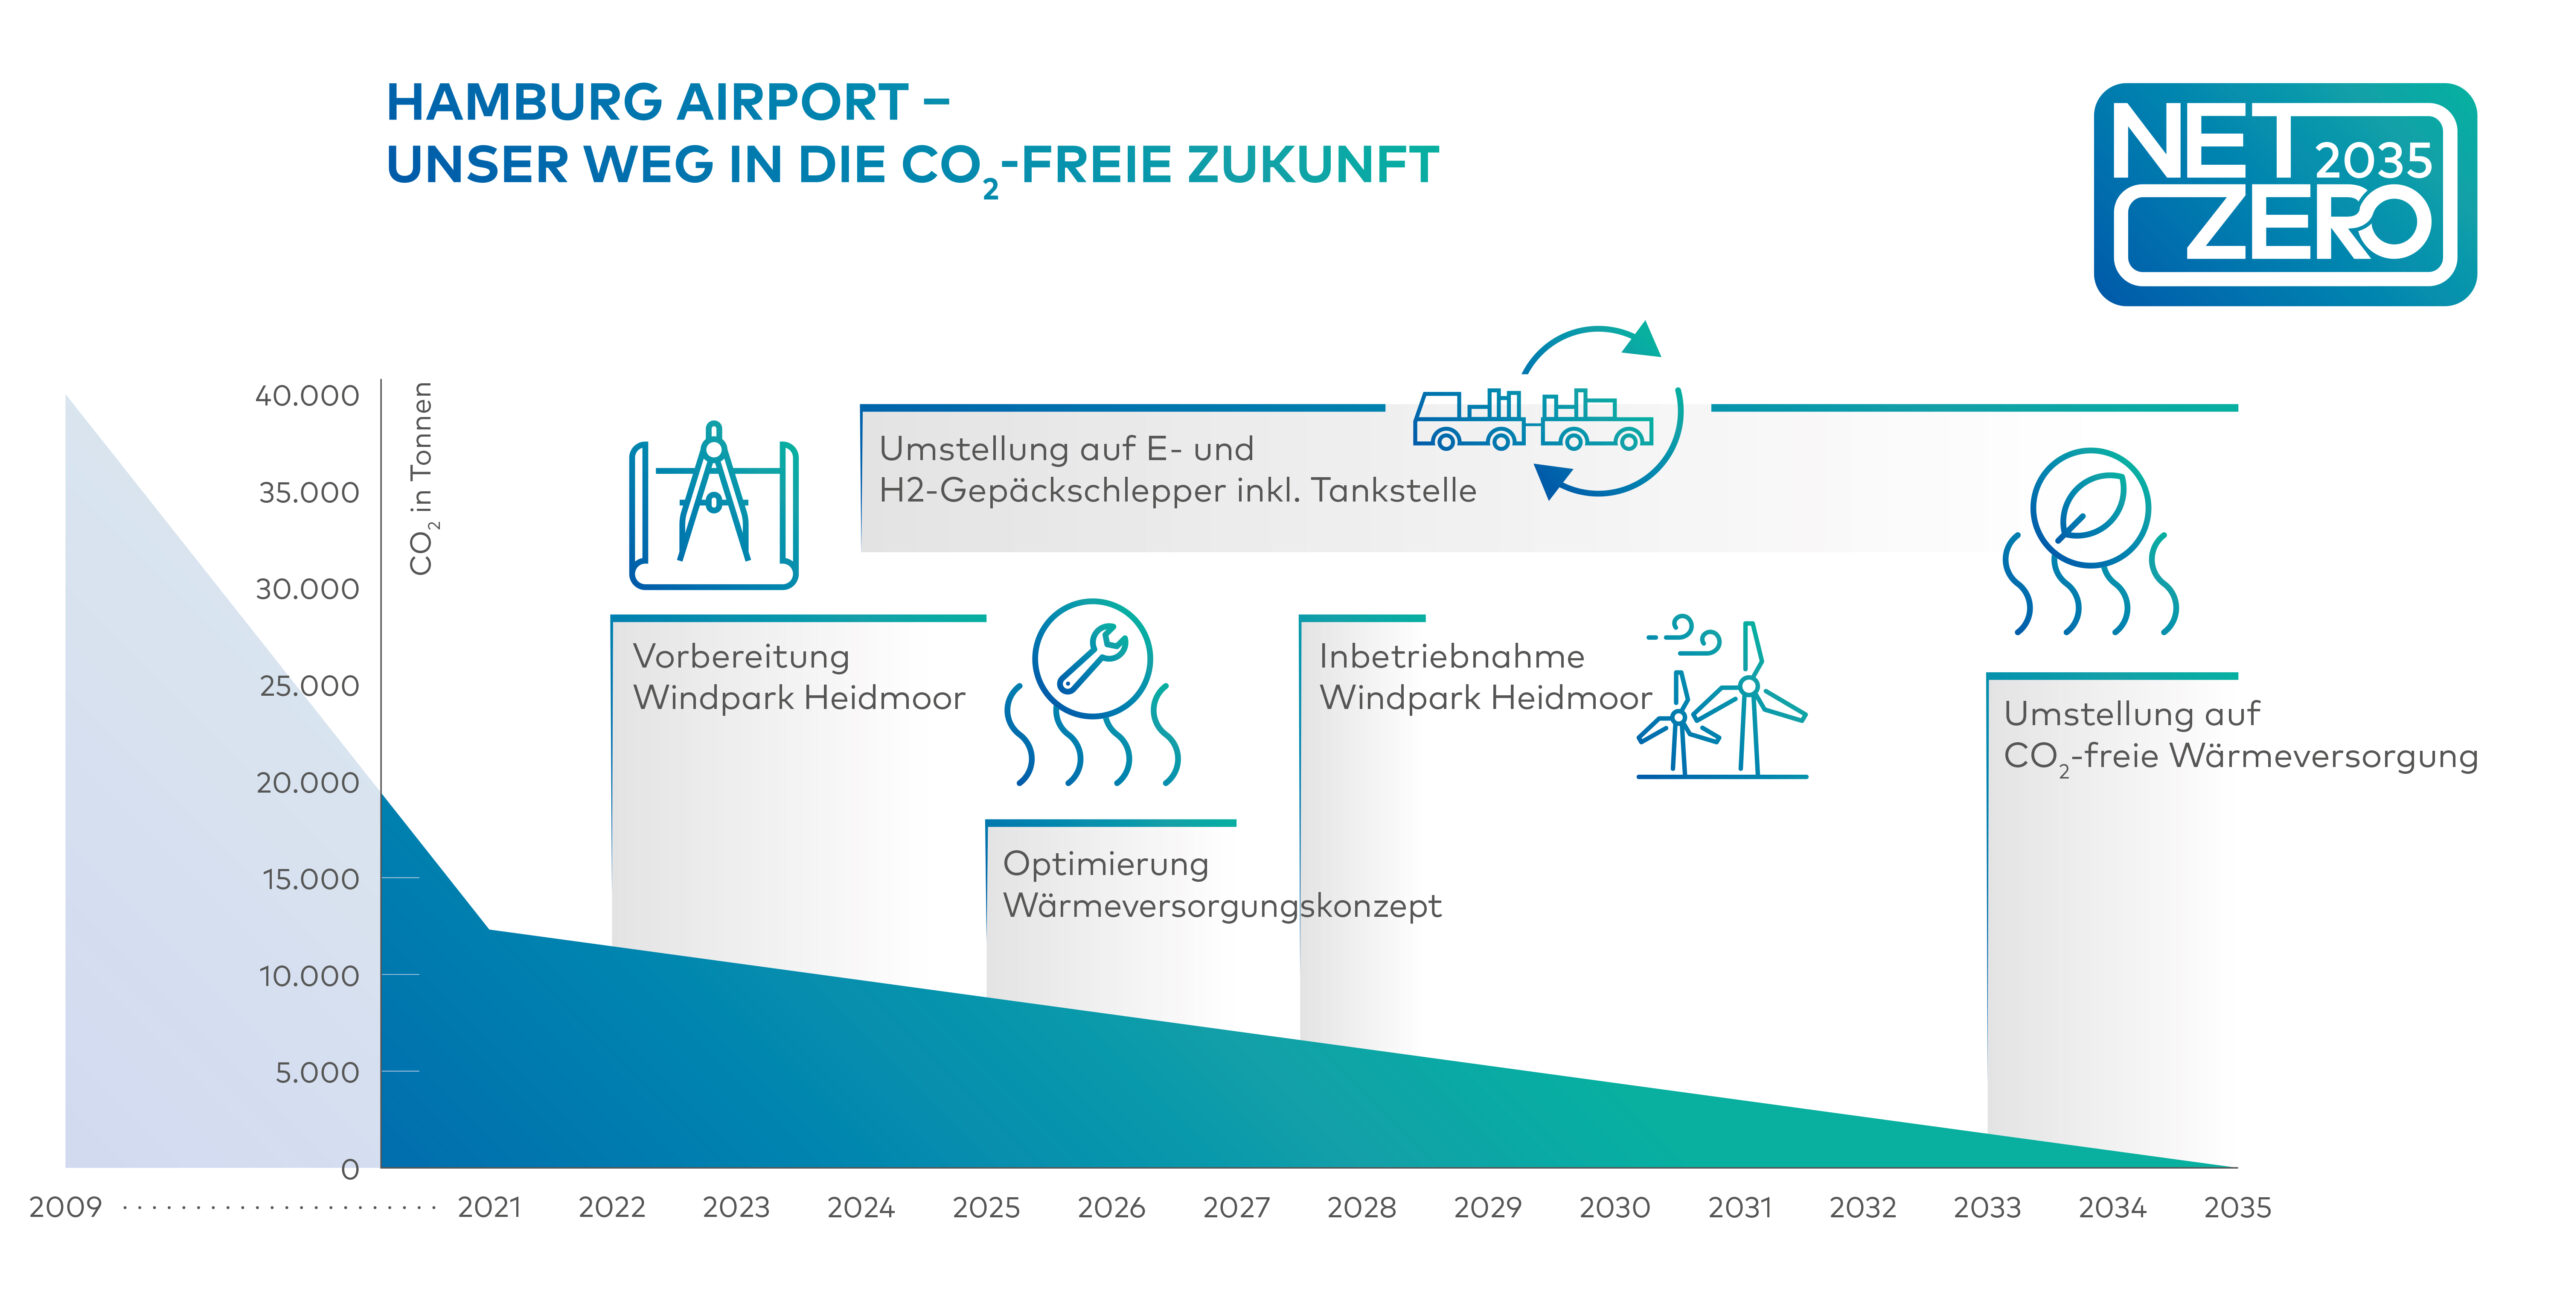 Unser Weg in die CO2-freie Zukunft - der Absenkungspfad zeigt, wie der CO2-Ausstoß des Hamburg Airport von 2021 bis 2035 auf null reduziert wird. Der Windpark Heidmoor wird 2028 in Betrieb genommen. Zusätzliche Maßnahmen sind die Umstellung auf Wasserstoff- und elektrobetriebene Gepäckschlepper am Flughafen sowie die Optimierung des Wärmeversorgungskonzepts.